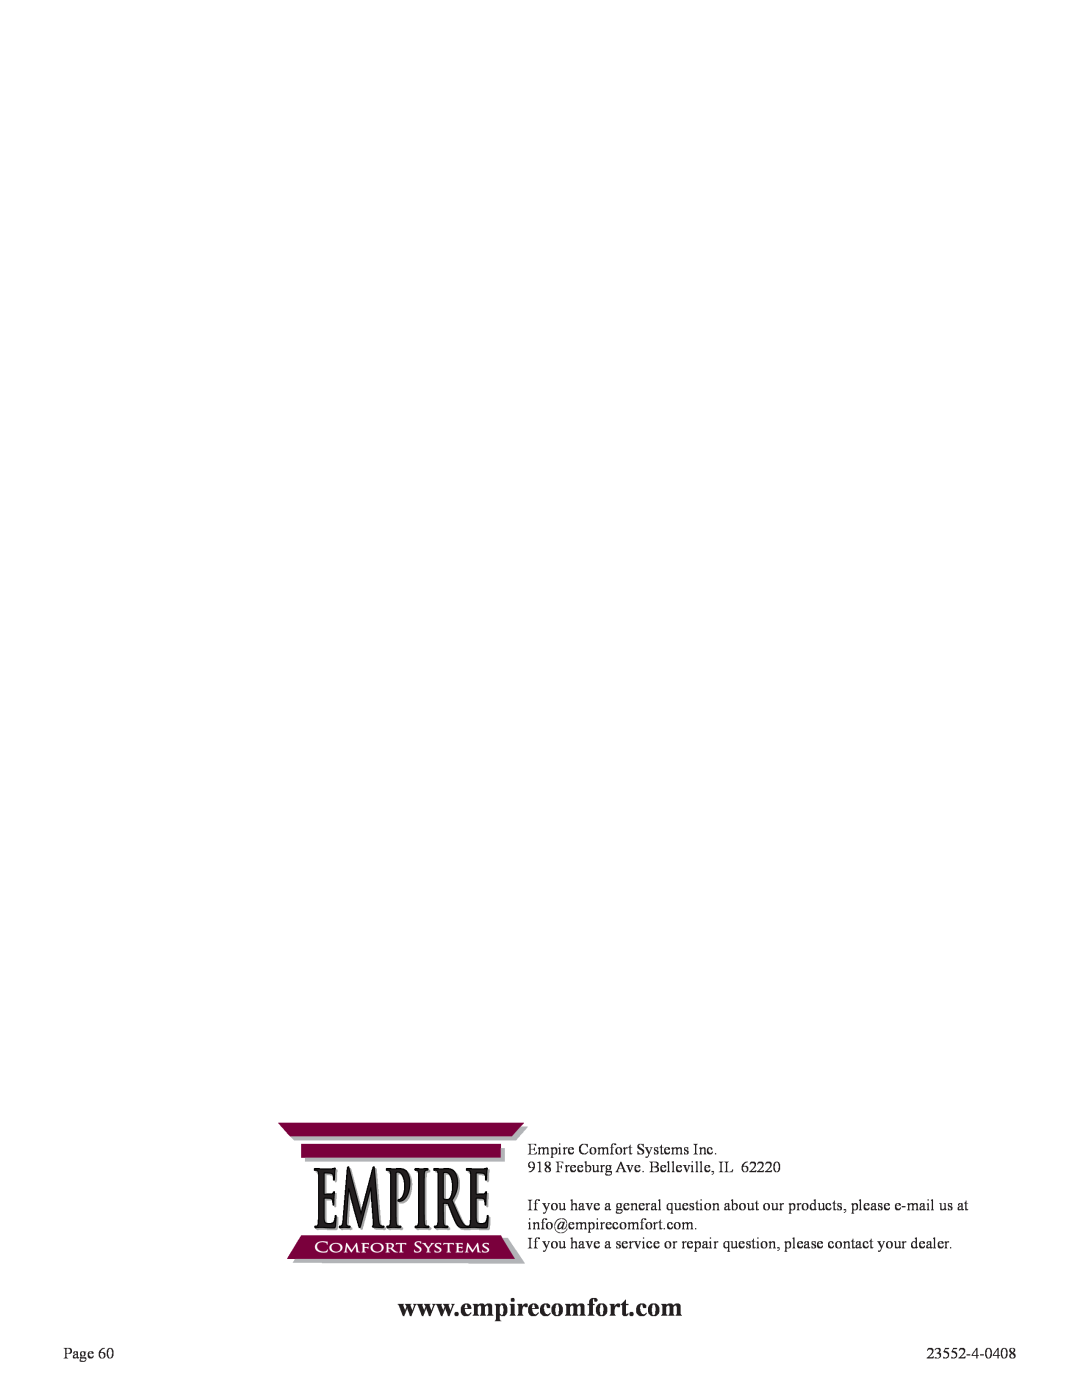 Empire Comfort Systems 3)(N Empire Comfort Systems Inc, EMPIRE 918 Freeburg Ave. Belleville, IL, Page, 23552-4-0408 